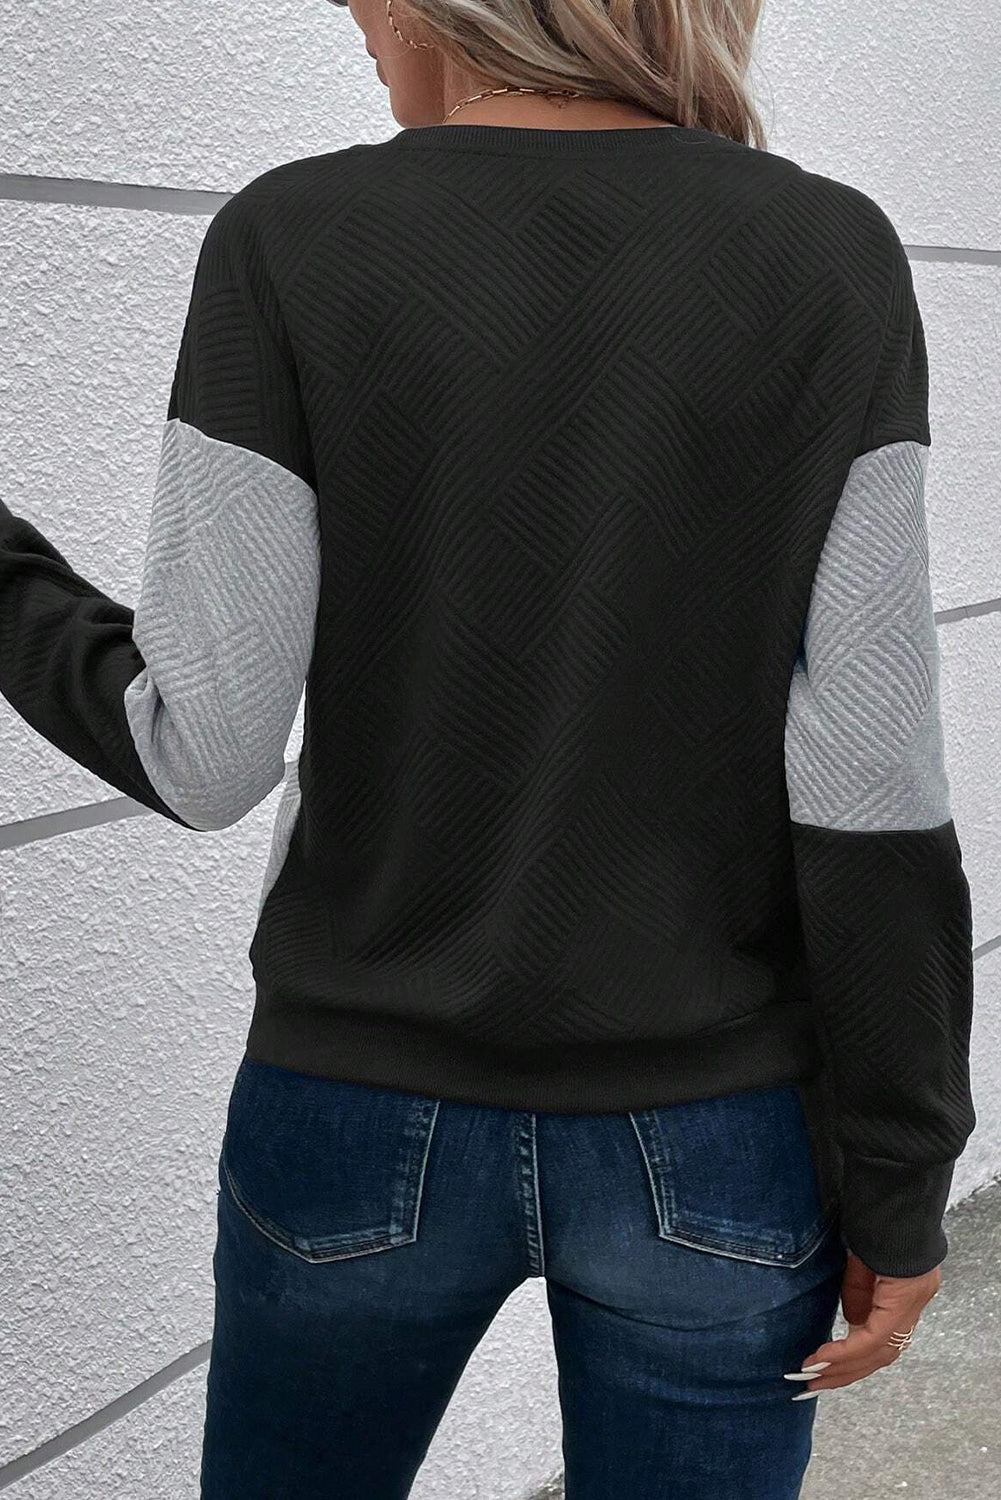 Schwarzes, strukturiertes Oberteil mit überschnittener Schulterpartie im Farbblockdesign